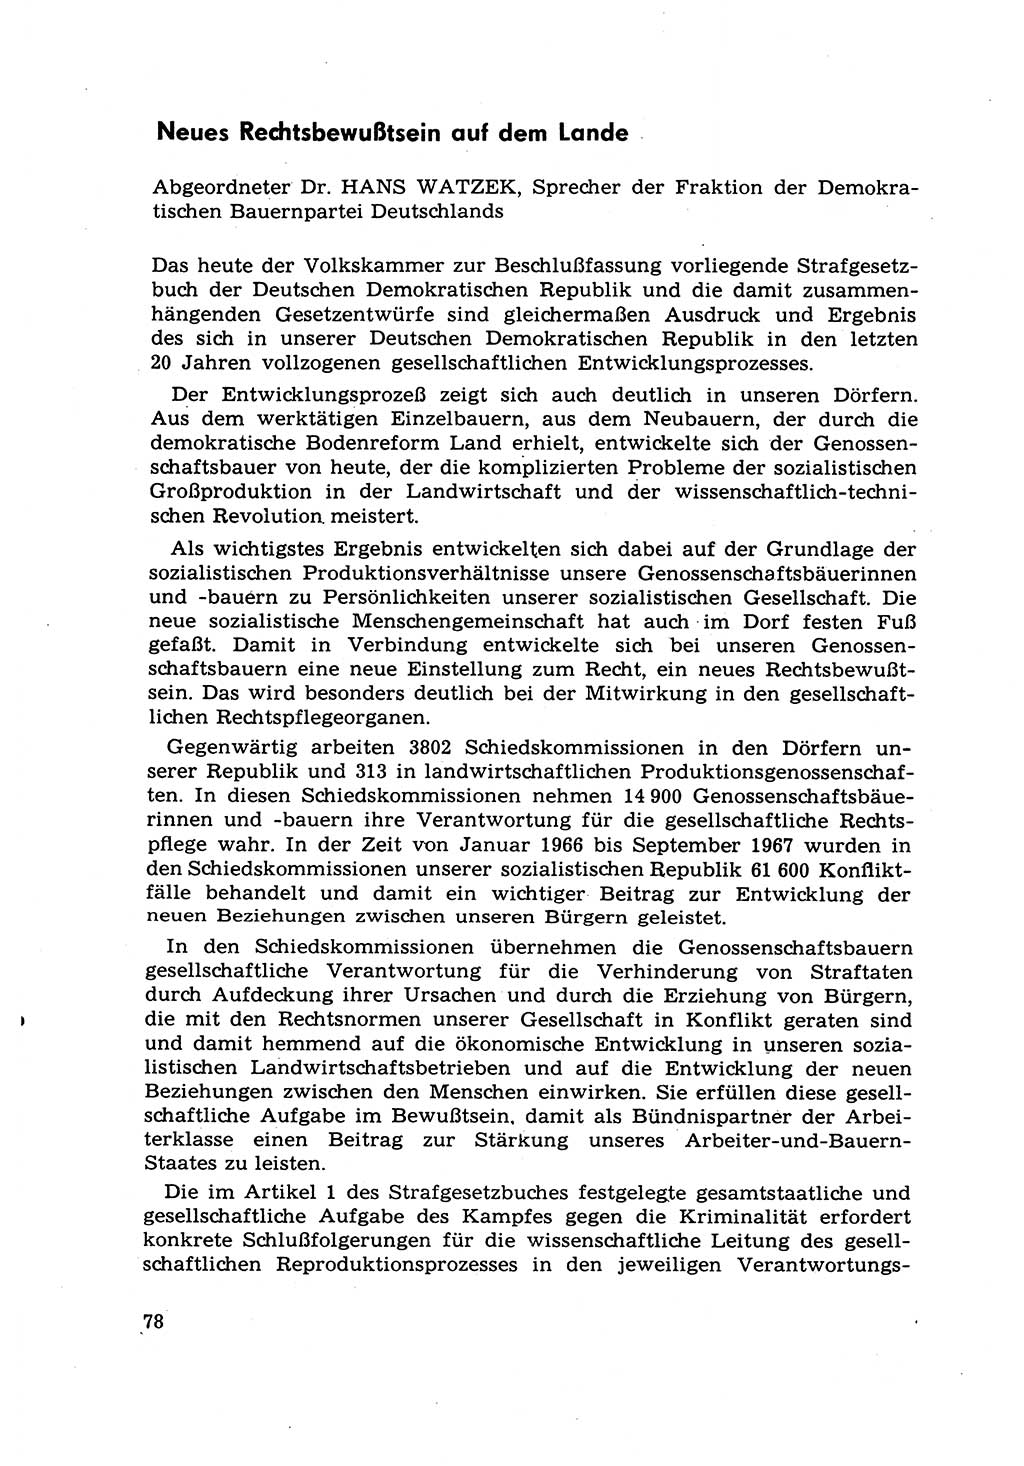 Strafrecht [Deutsche Demokratische Republik (DDR)] 1968, Seite 78 (Strafr. DDR 1968, S. 78)